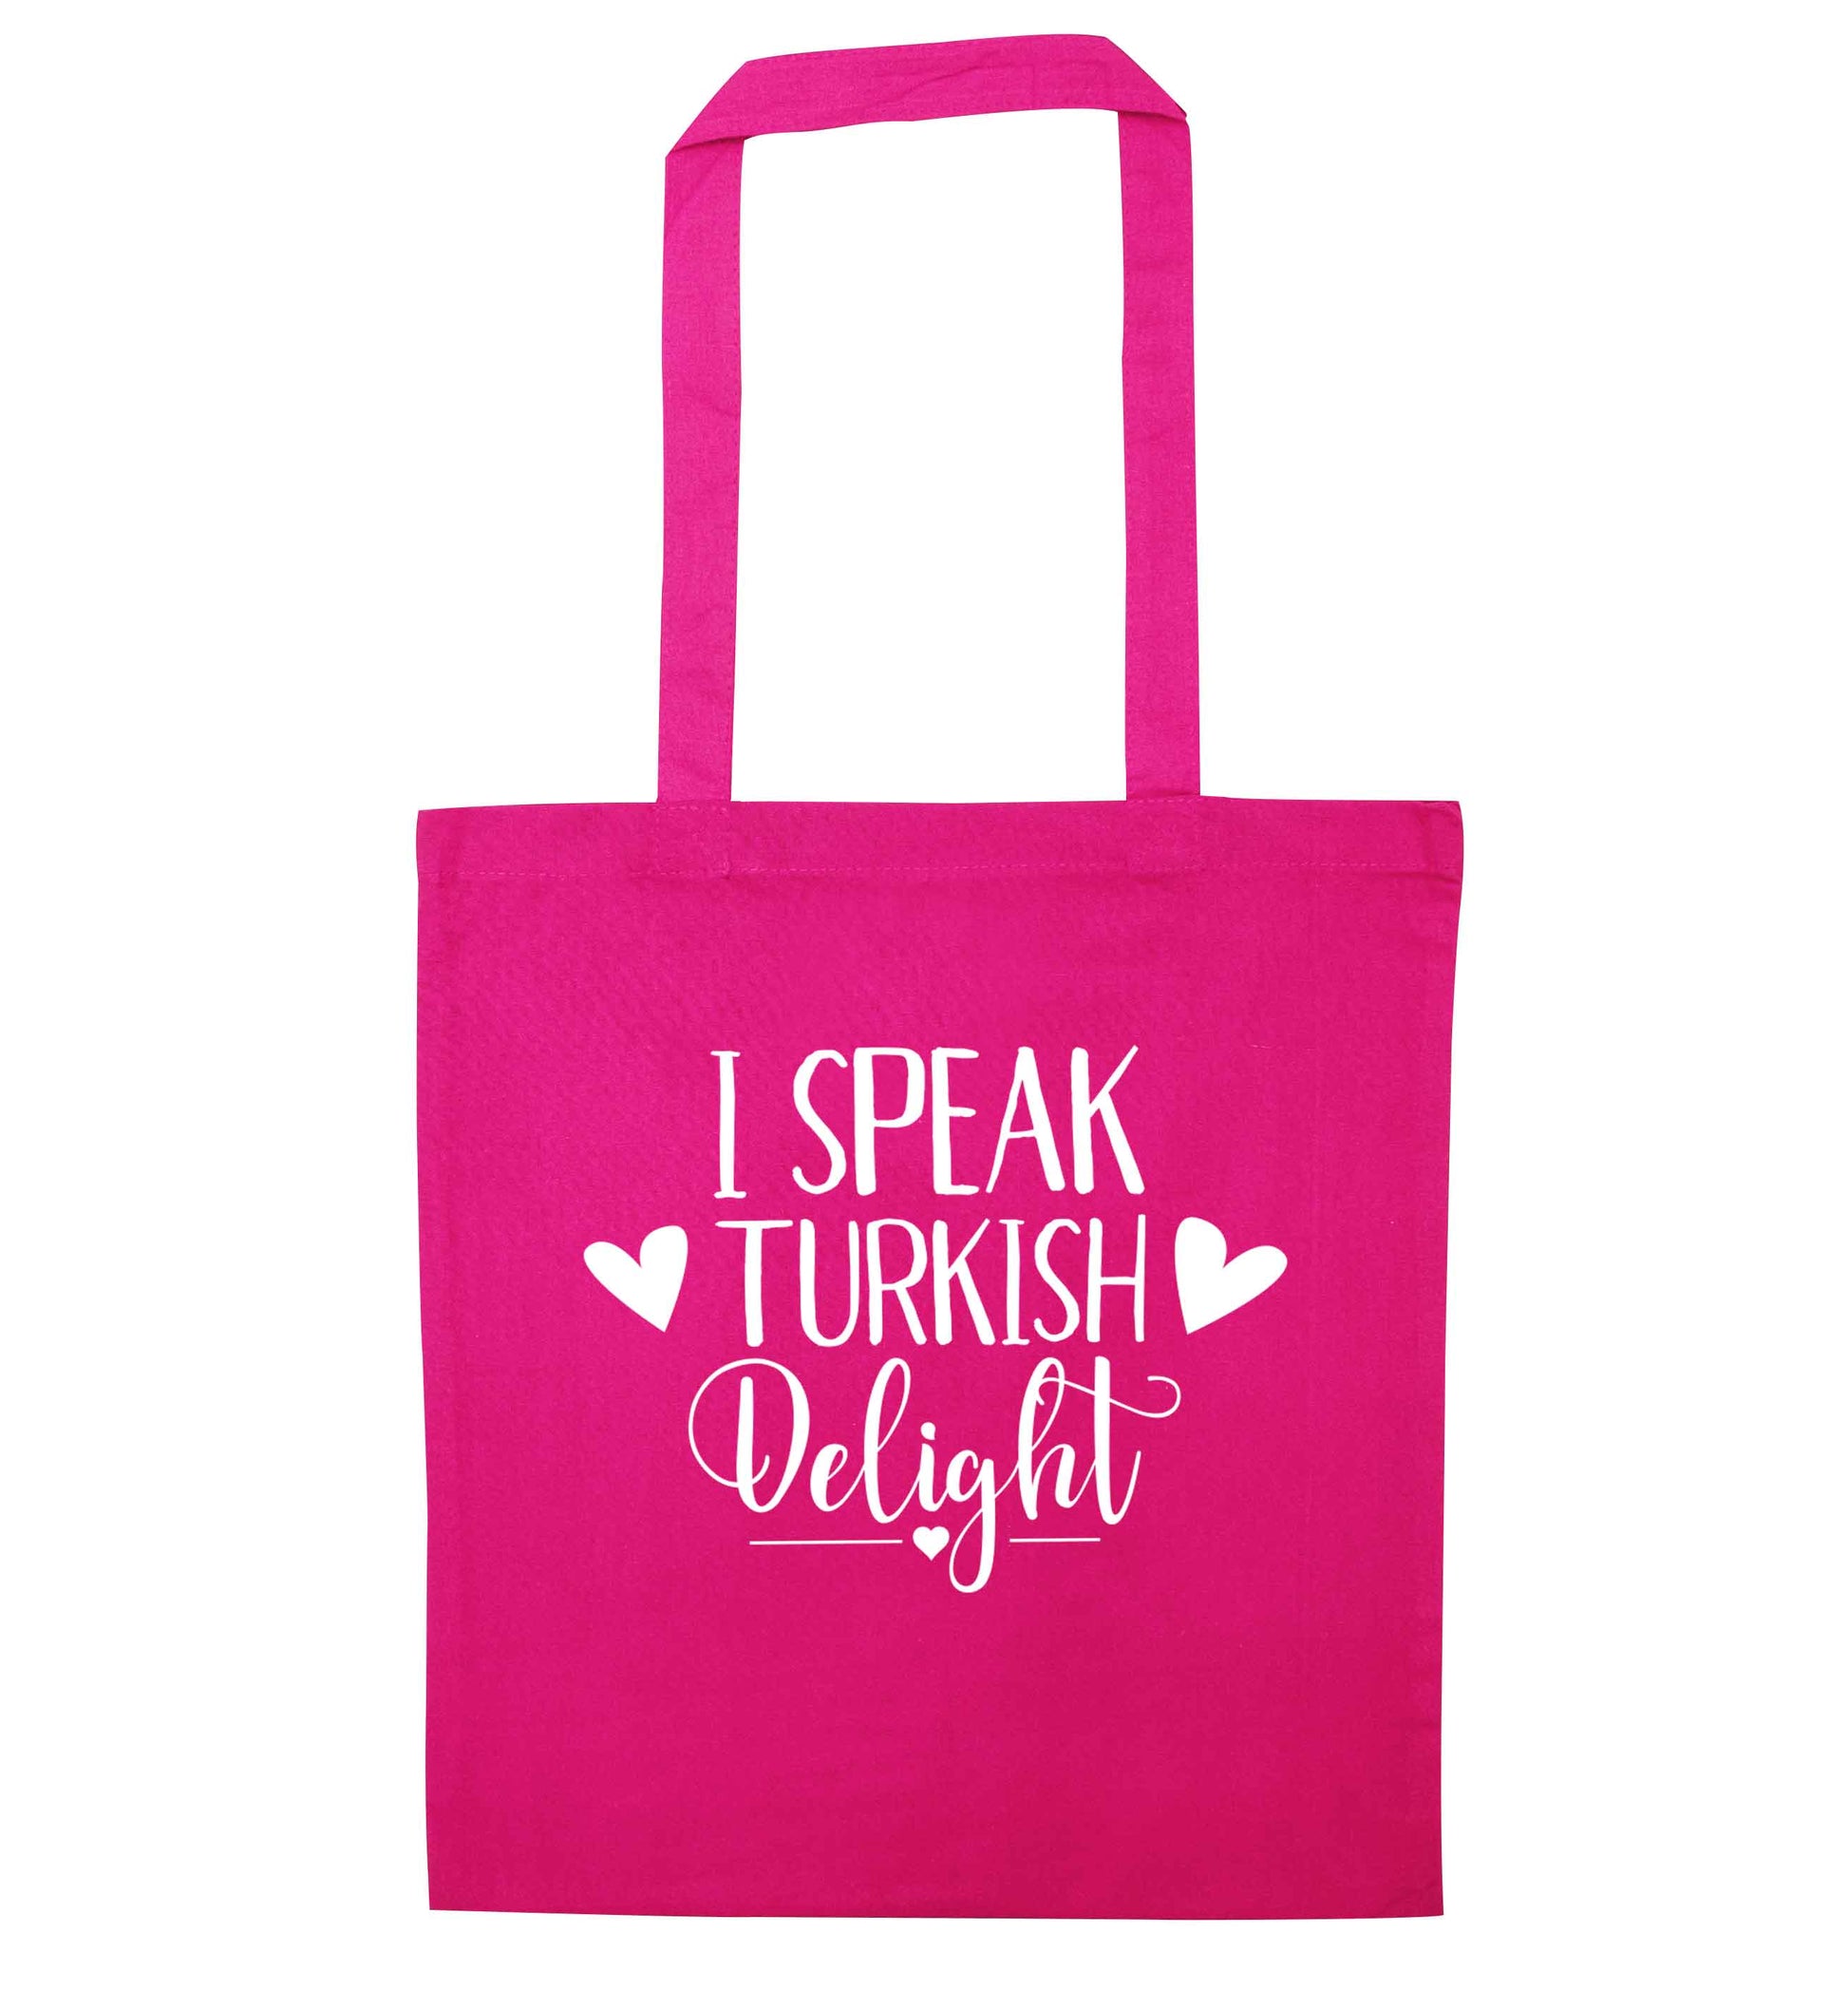 I speak turkish...delight pink tote bag